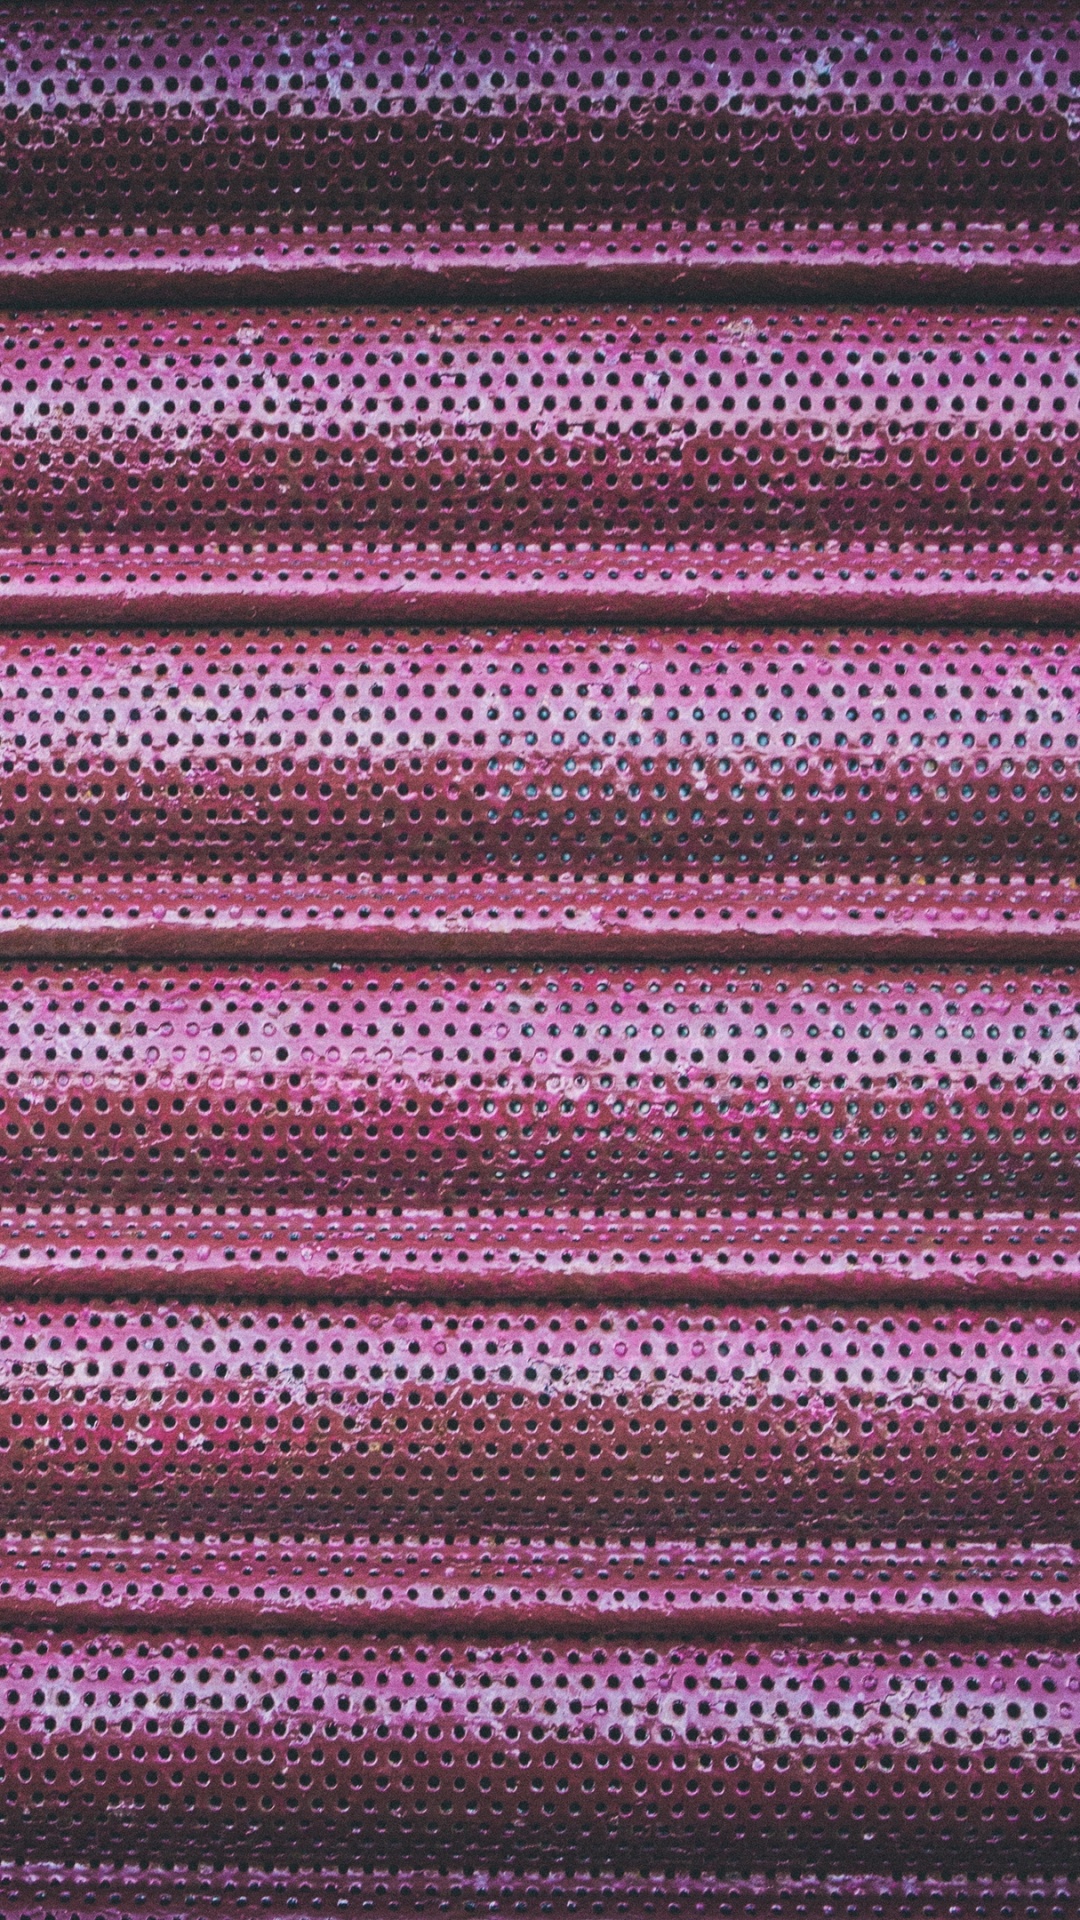 Textile Rayé Violet et Noir. Wallpaper in 1080x1920 Resolution